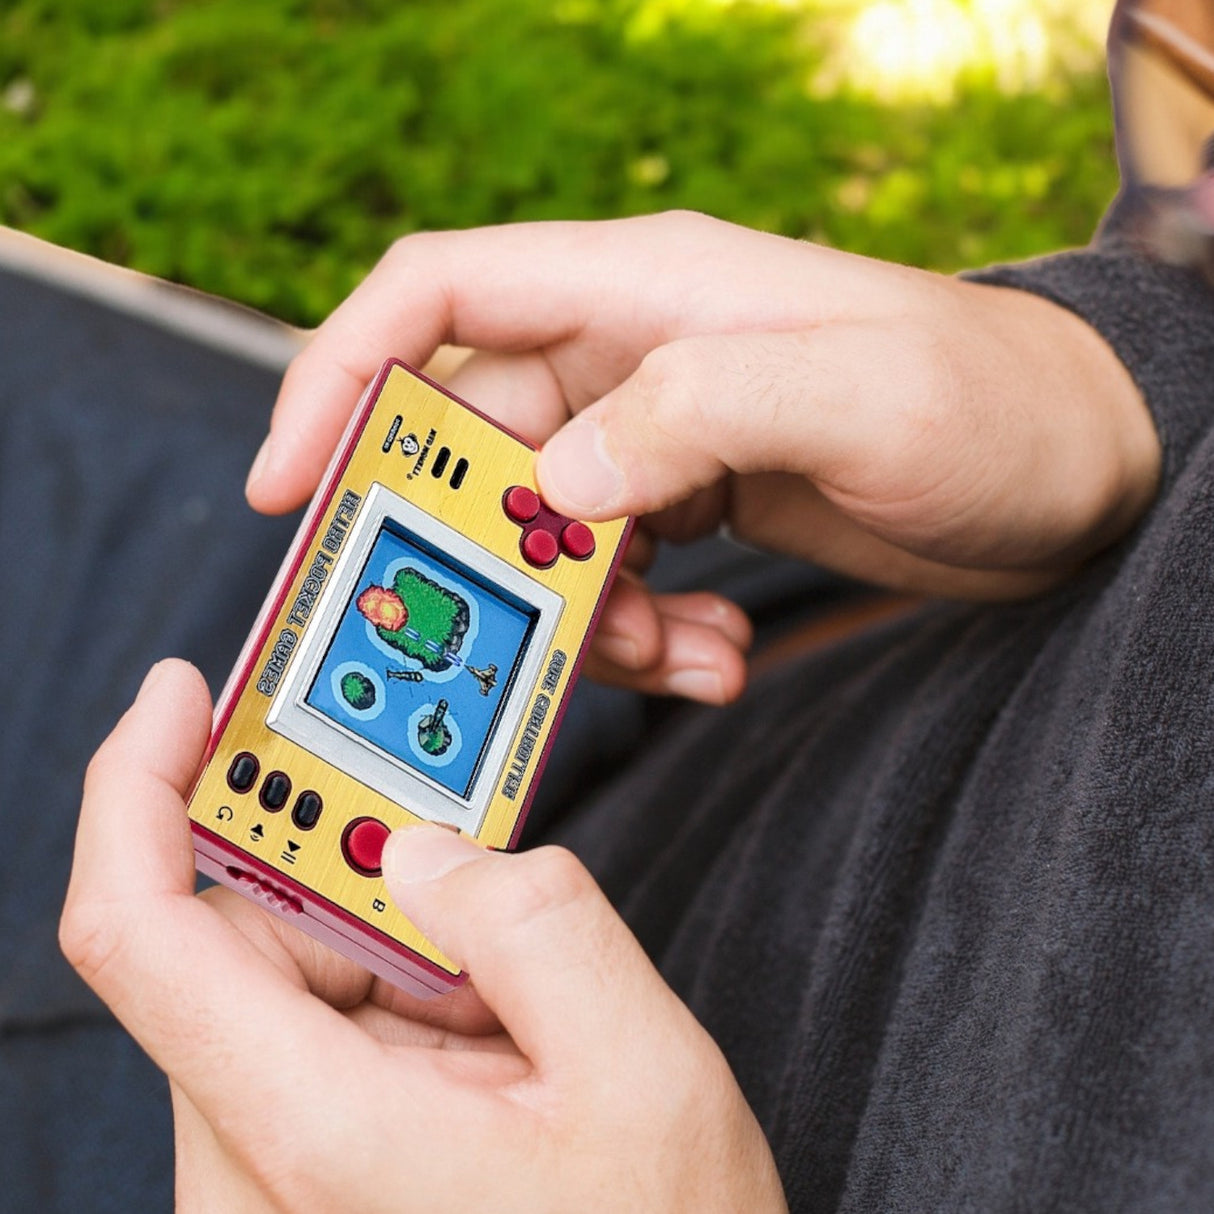 Retro Arcade Spielzeug Mini-Konsole mit 153 Spielen und Sound